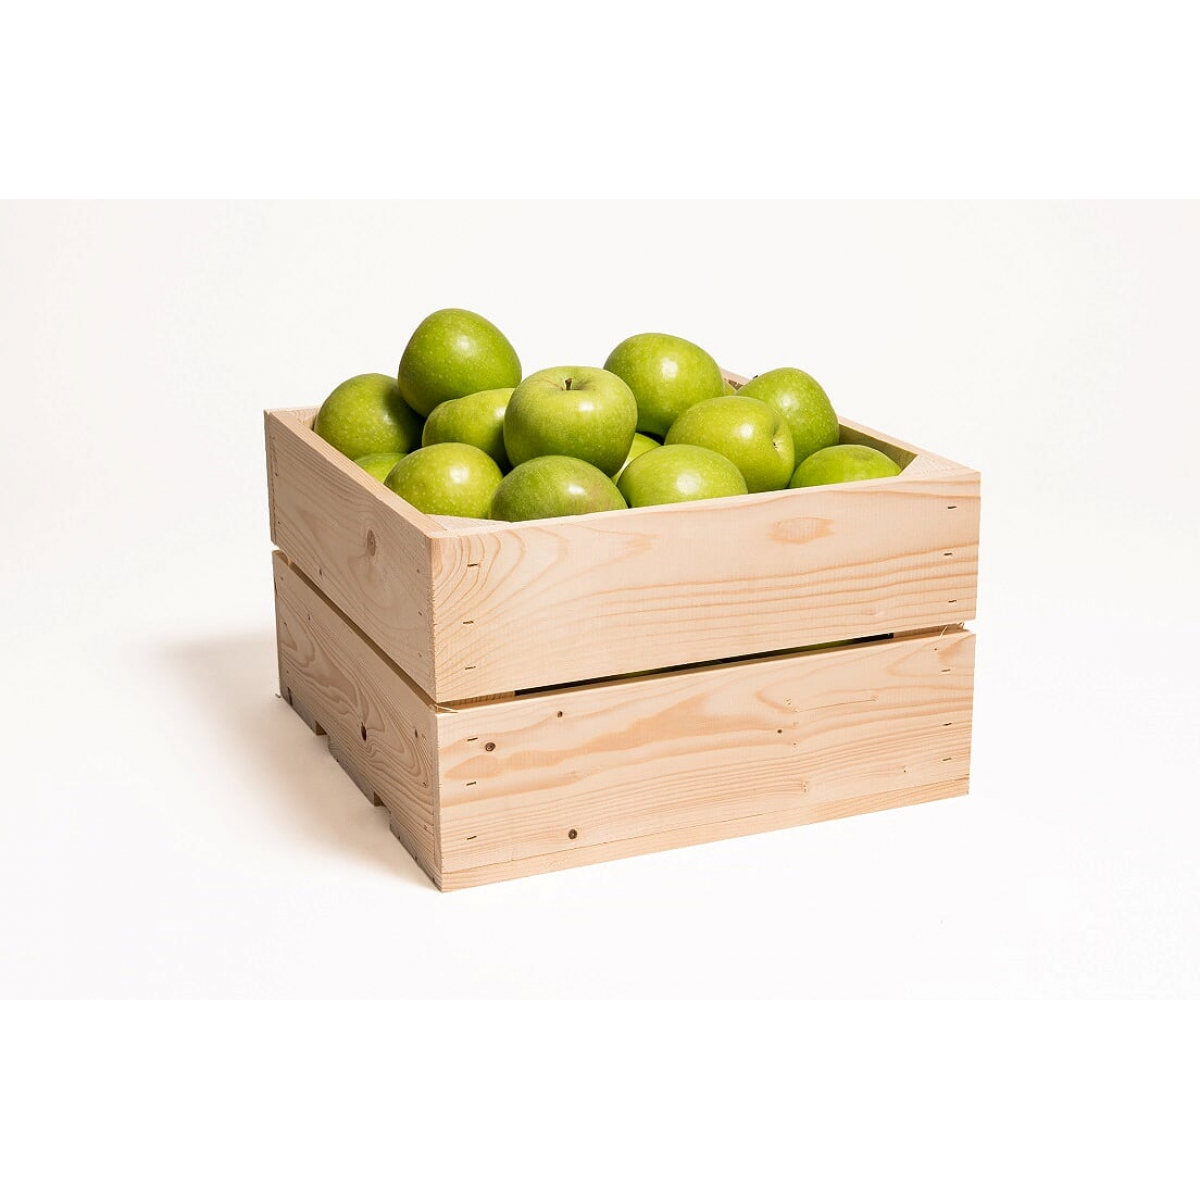 Kist appels | Bedrukt fruit | Appels Bedrukken | 25 Stuks